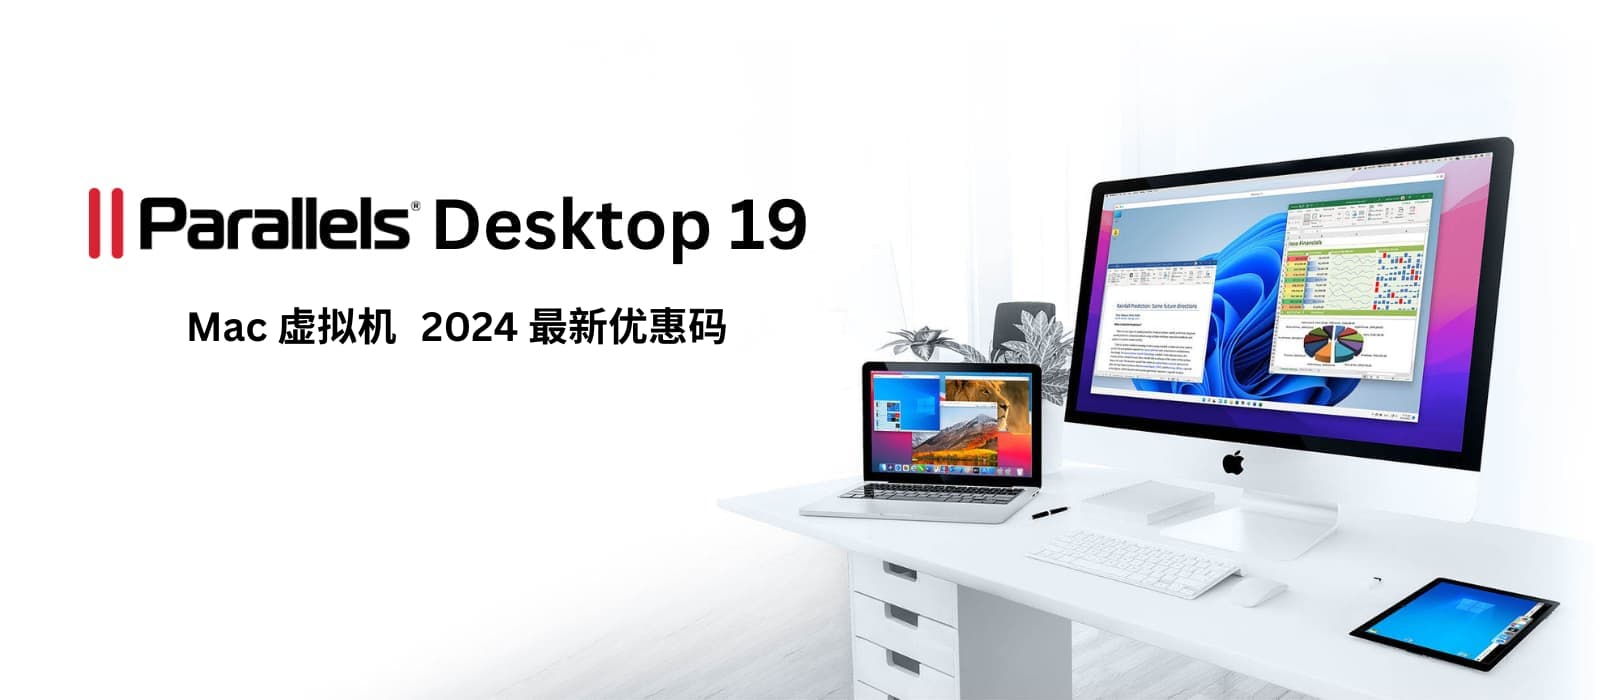 Parallels Desktop 19 - macOS 虚拟机工具，2024春季 8 折限时优惠[截止2024年5月1日] 18